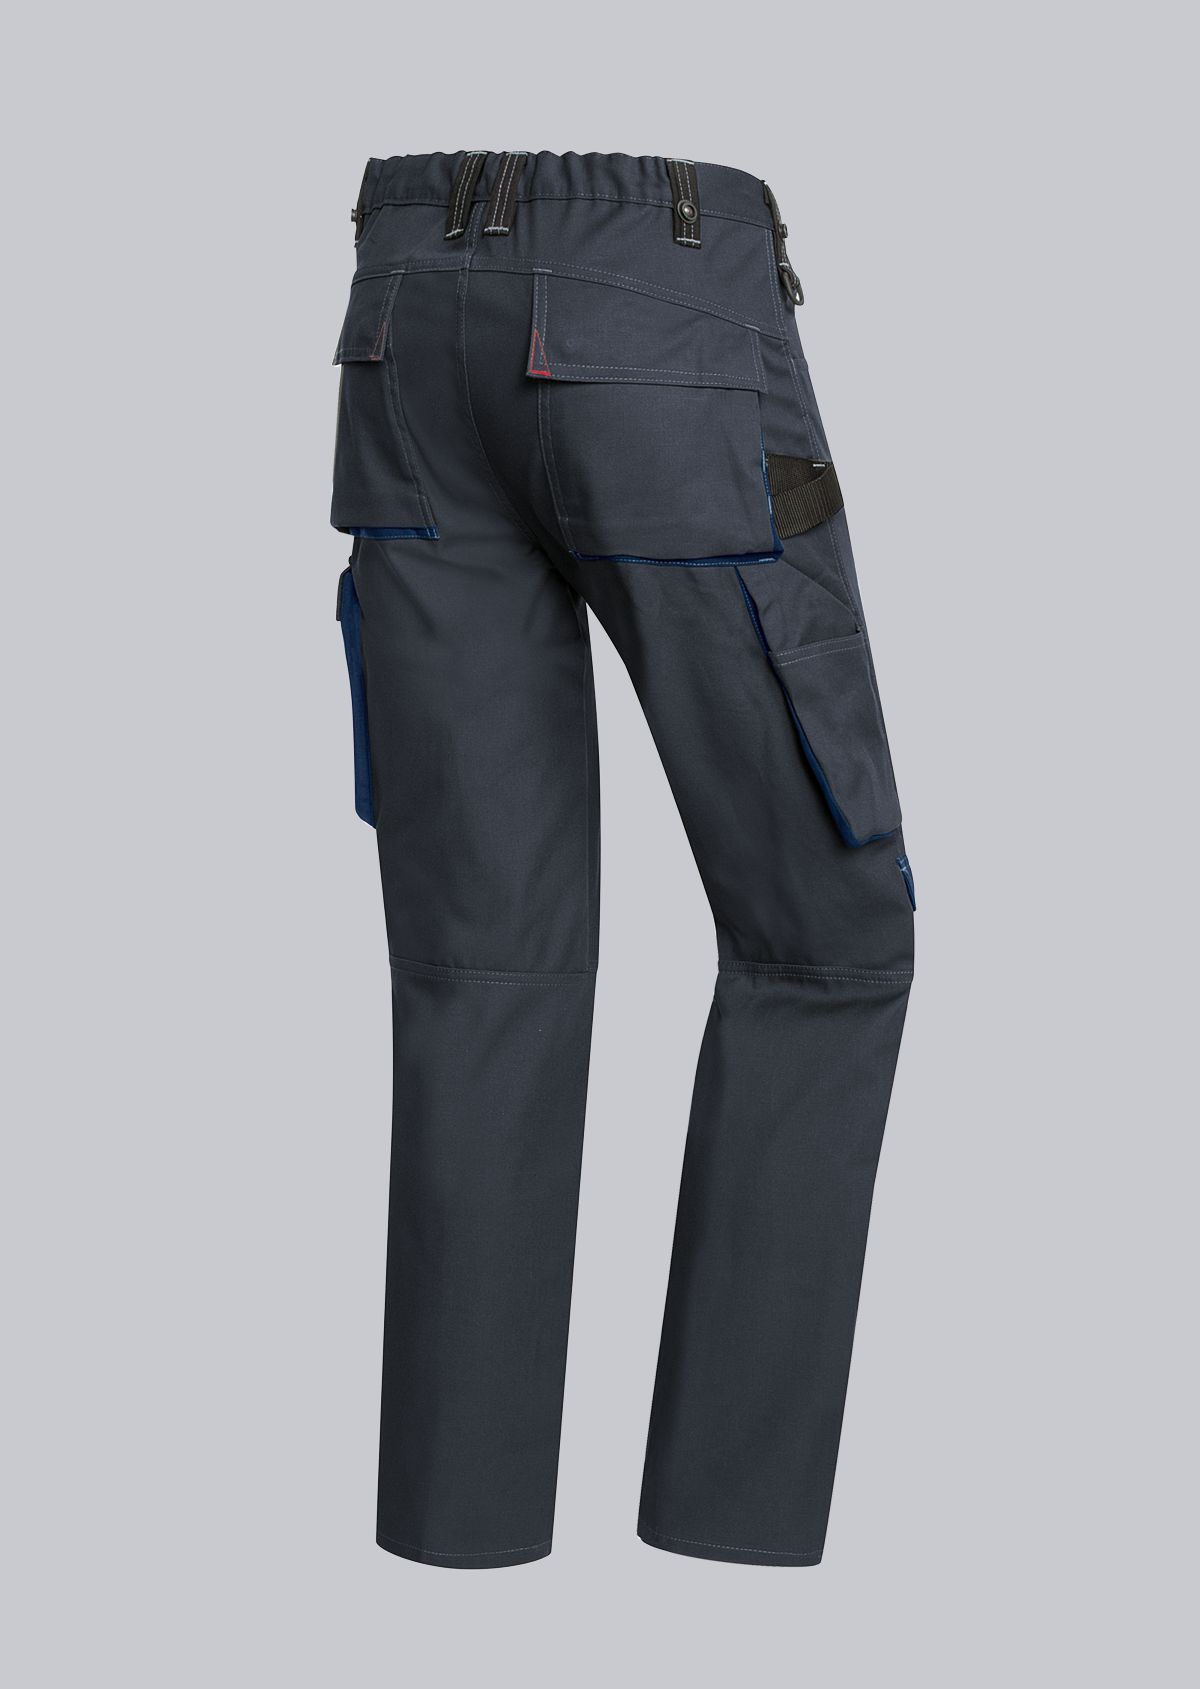 BP® Pantalon de travail confort avec genouillères